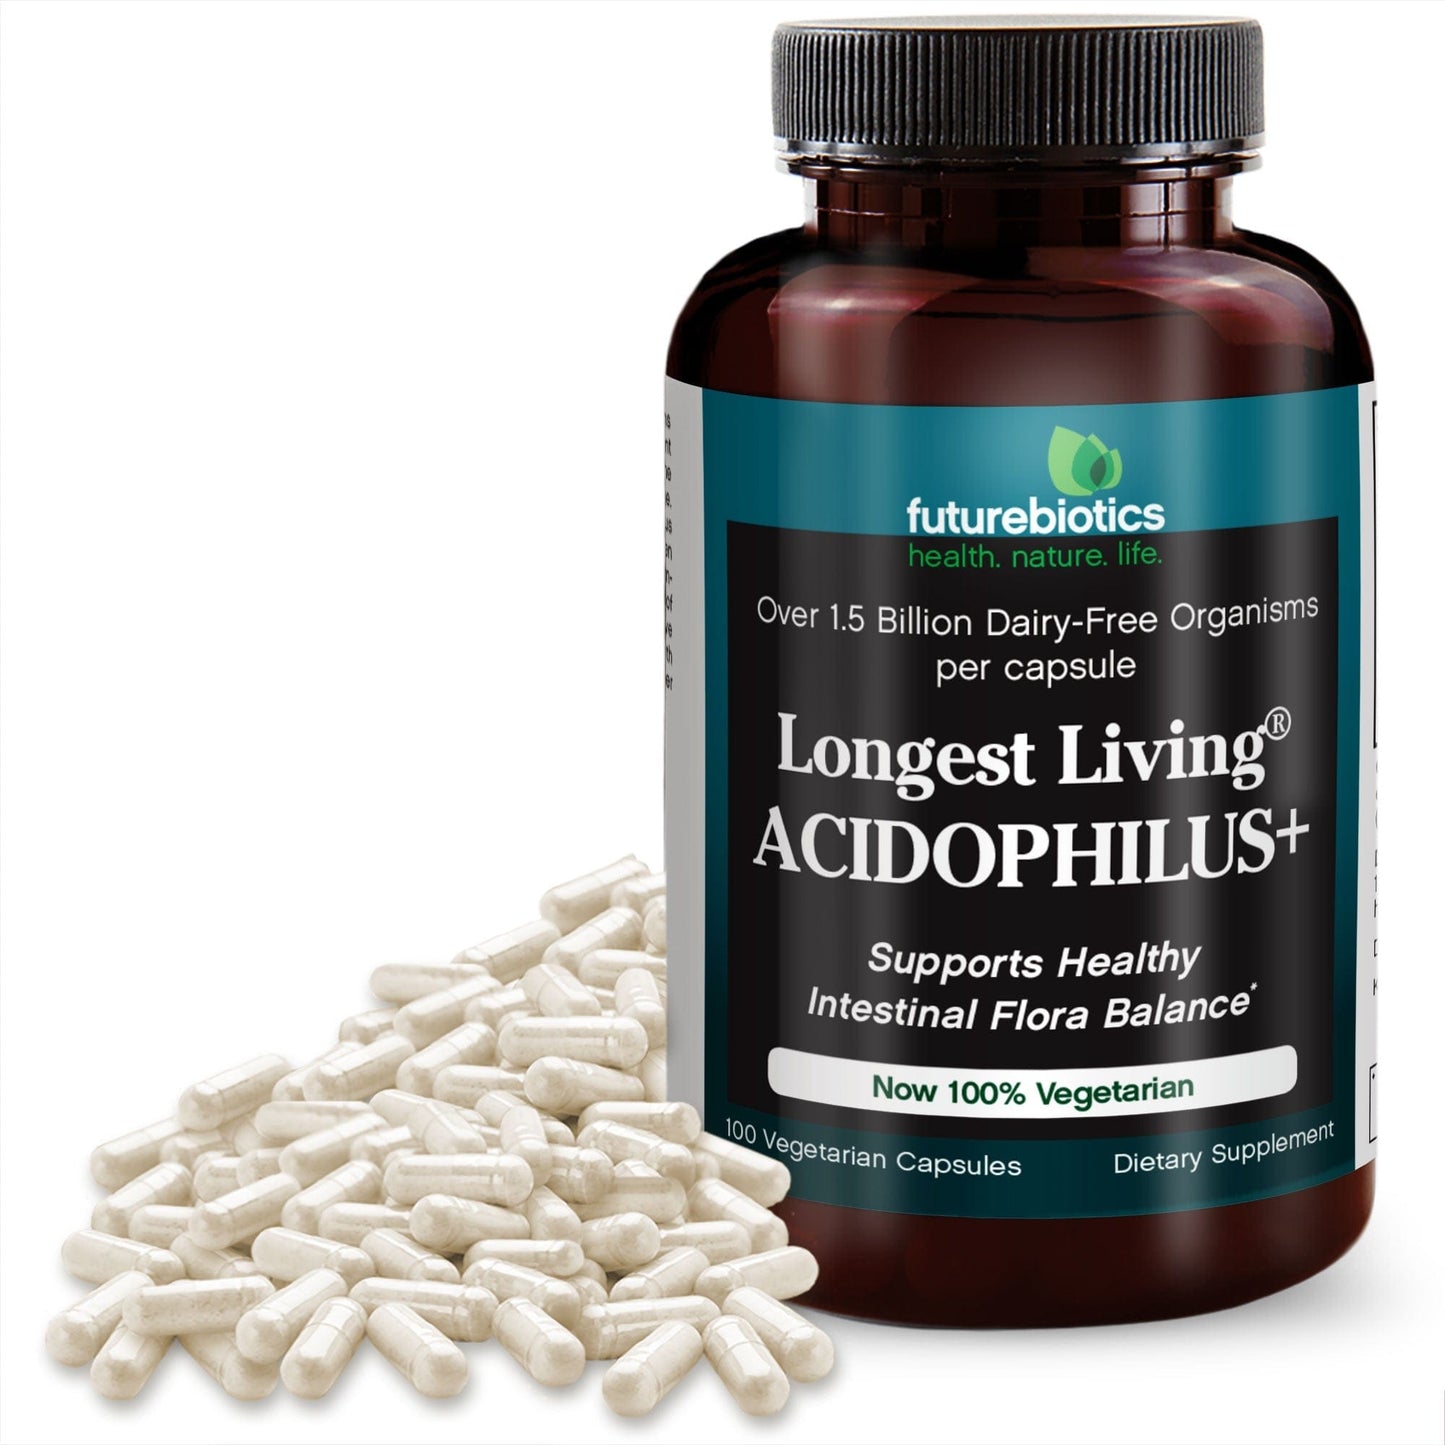 Futurebiotics Longest Living Acidophilus+ Probiotic Supplement, 100 Capsules (19.5mg of Probiotics per Capsule)